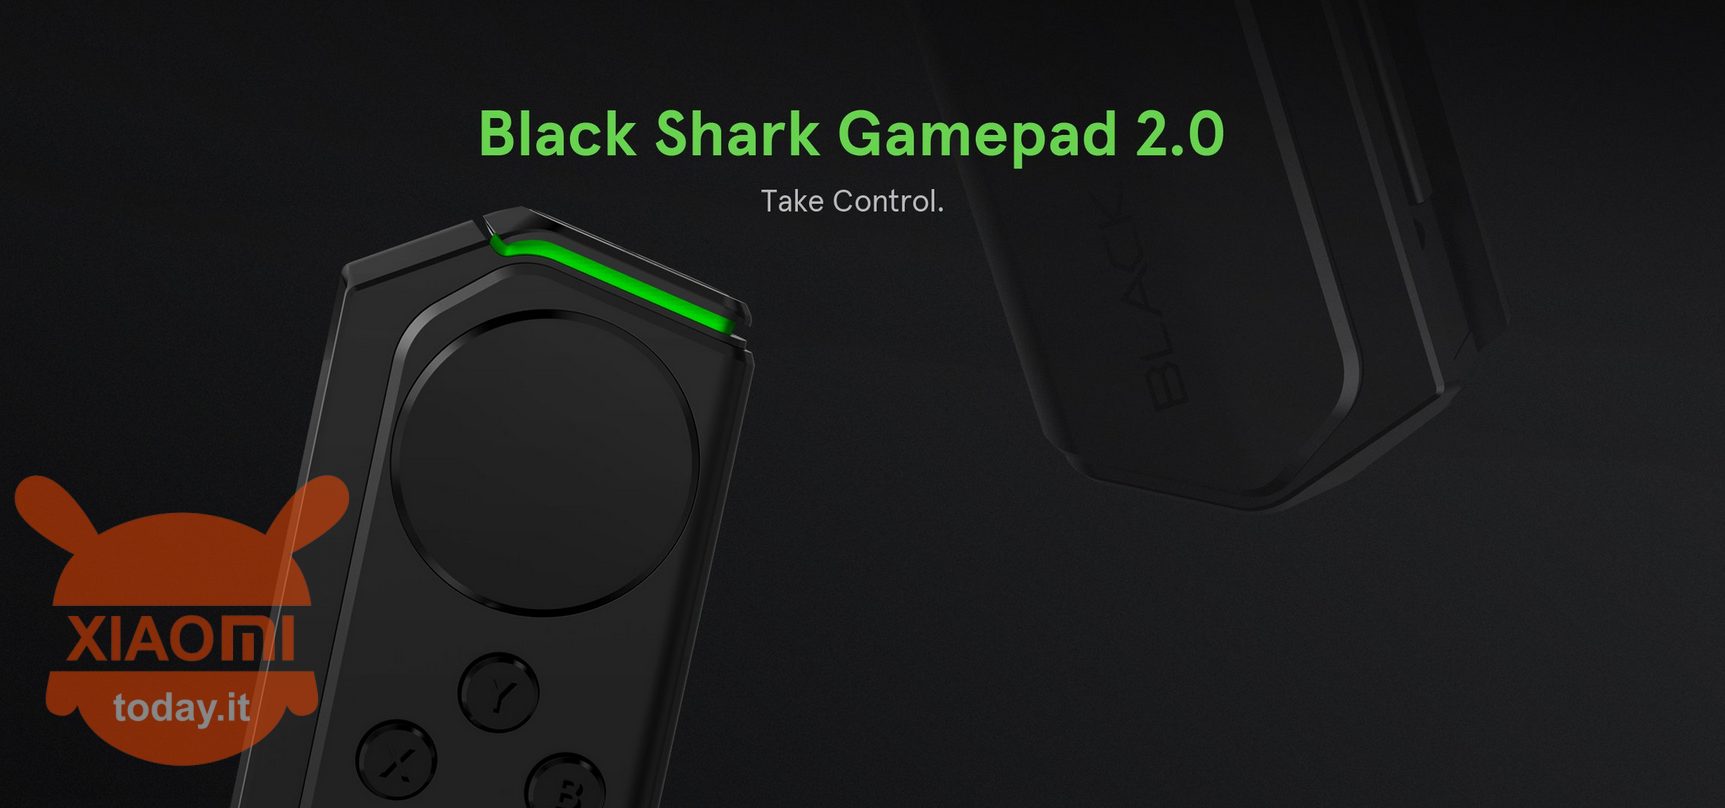 काला शार्क gamepad 2.0